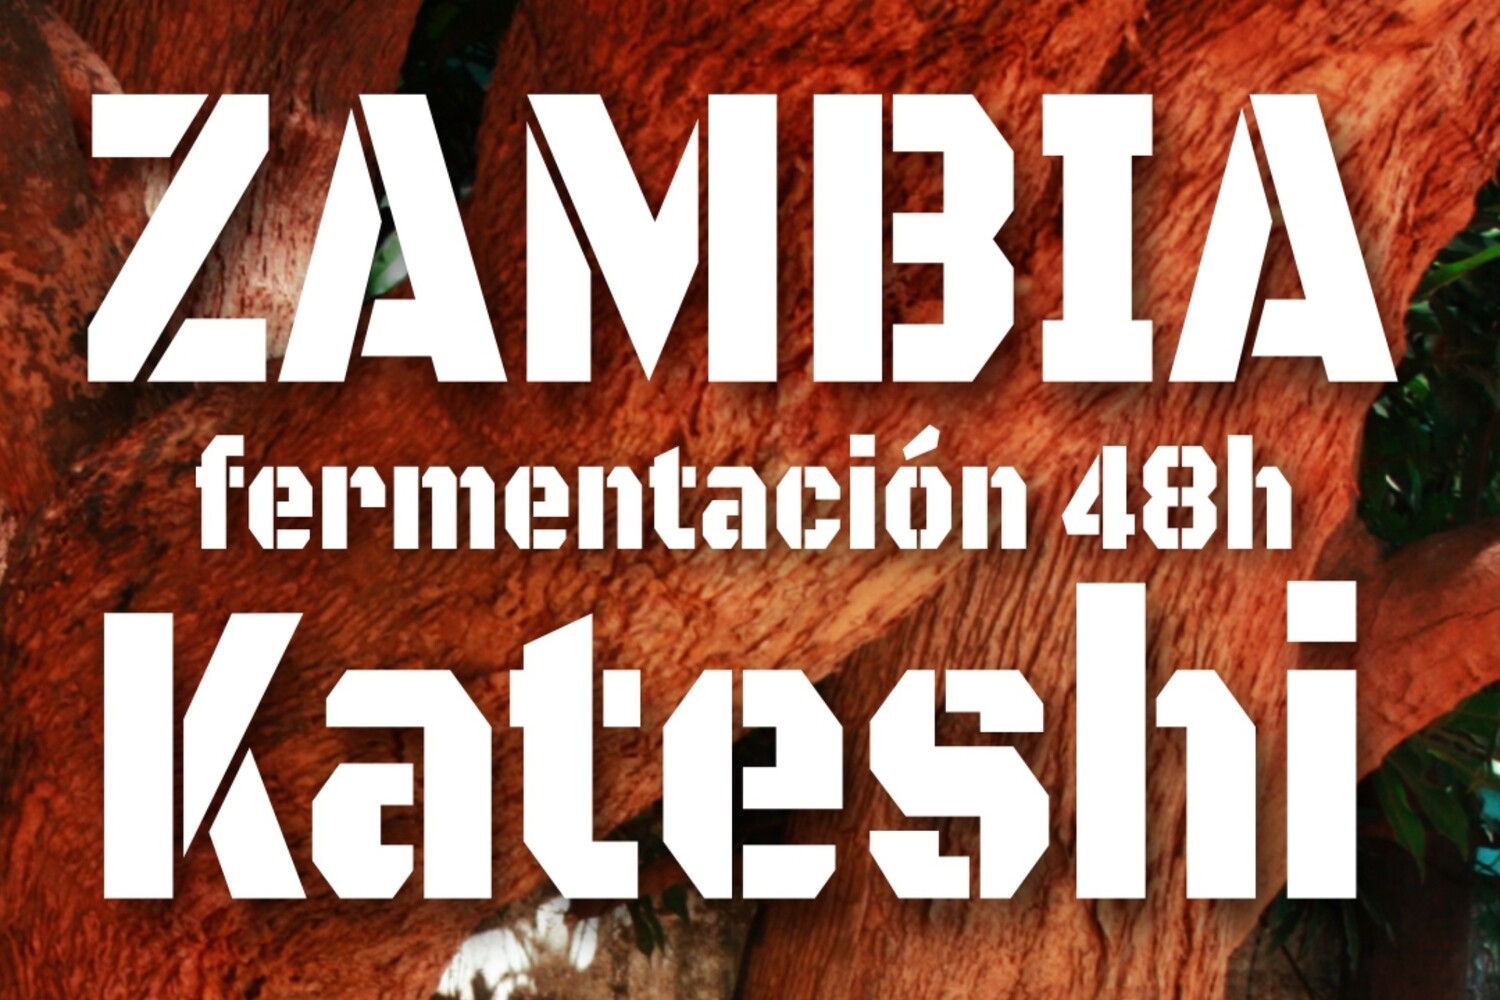 Zambia Kateshi